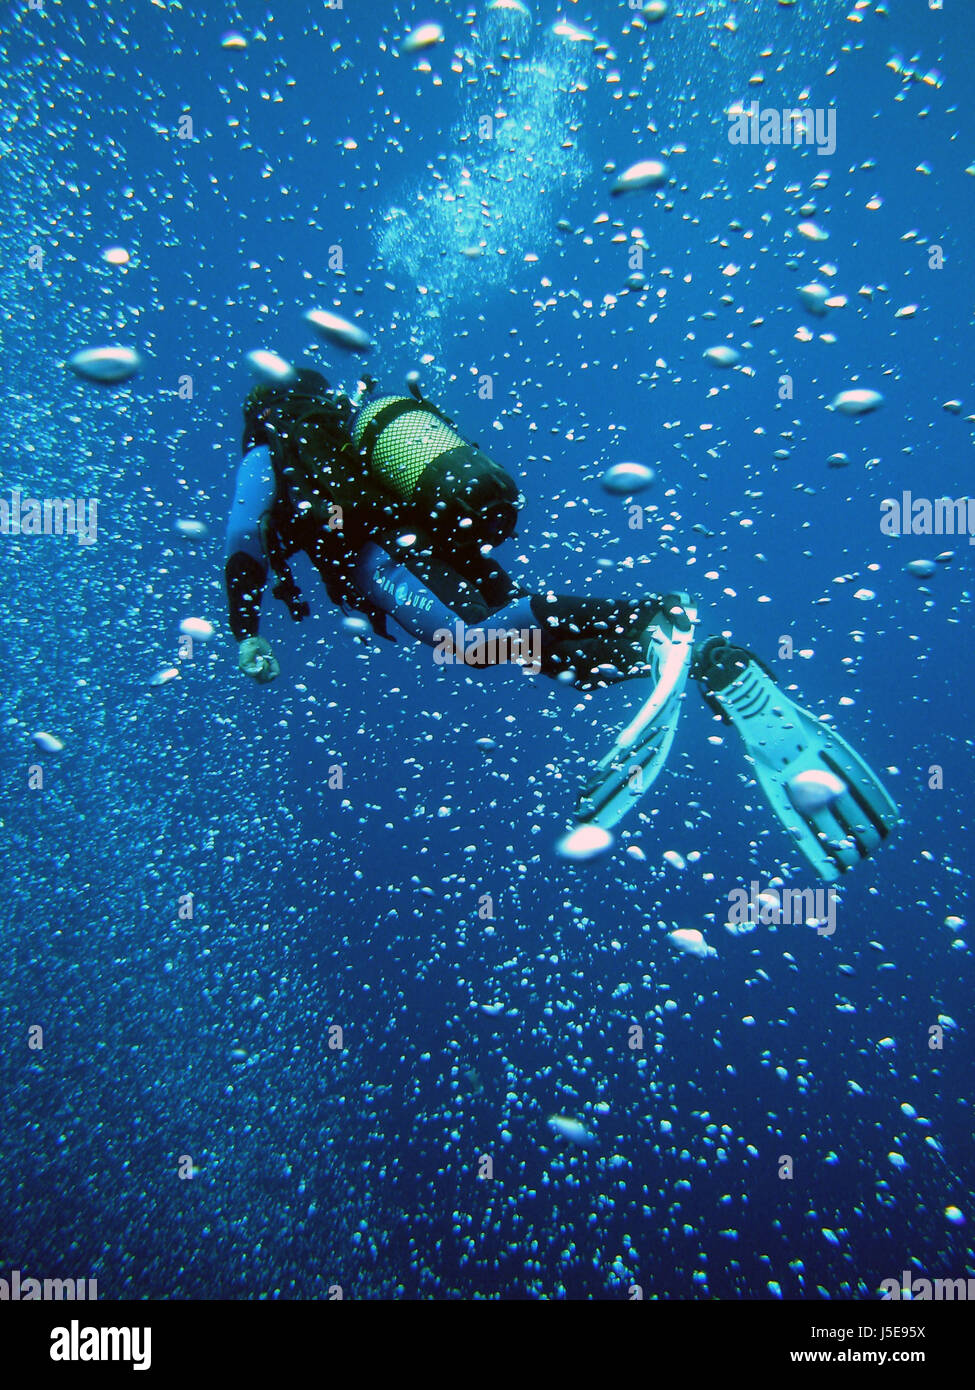 blue under dive diving sports salt water sea ocean water diver blue bubbles Stock Photo